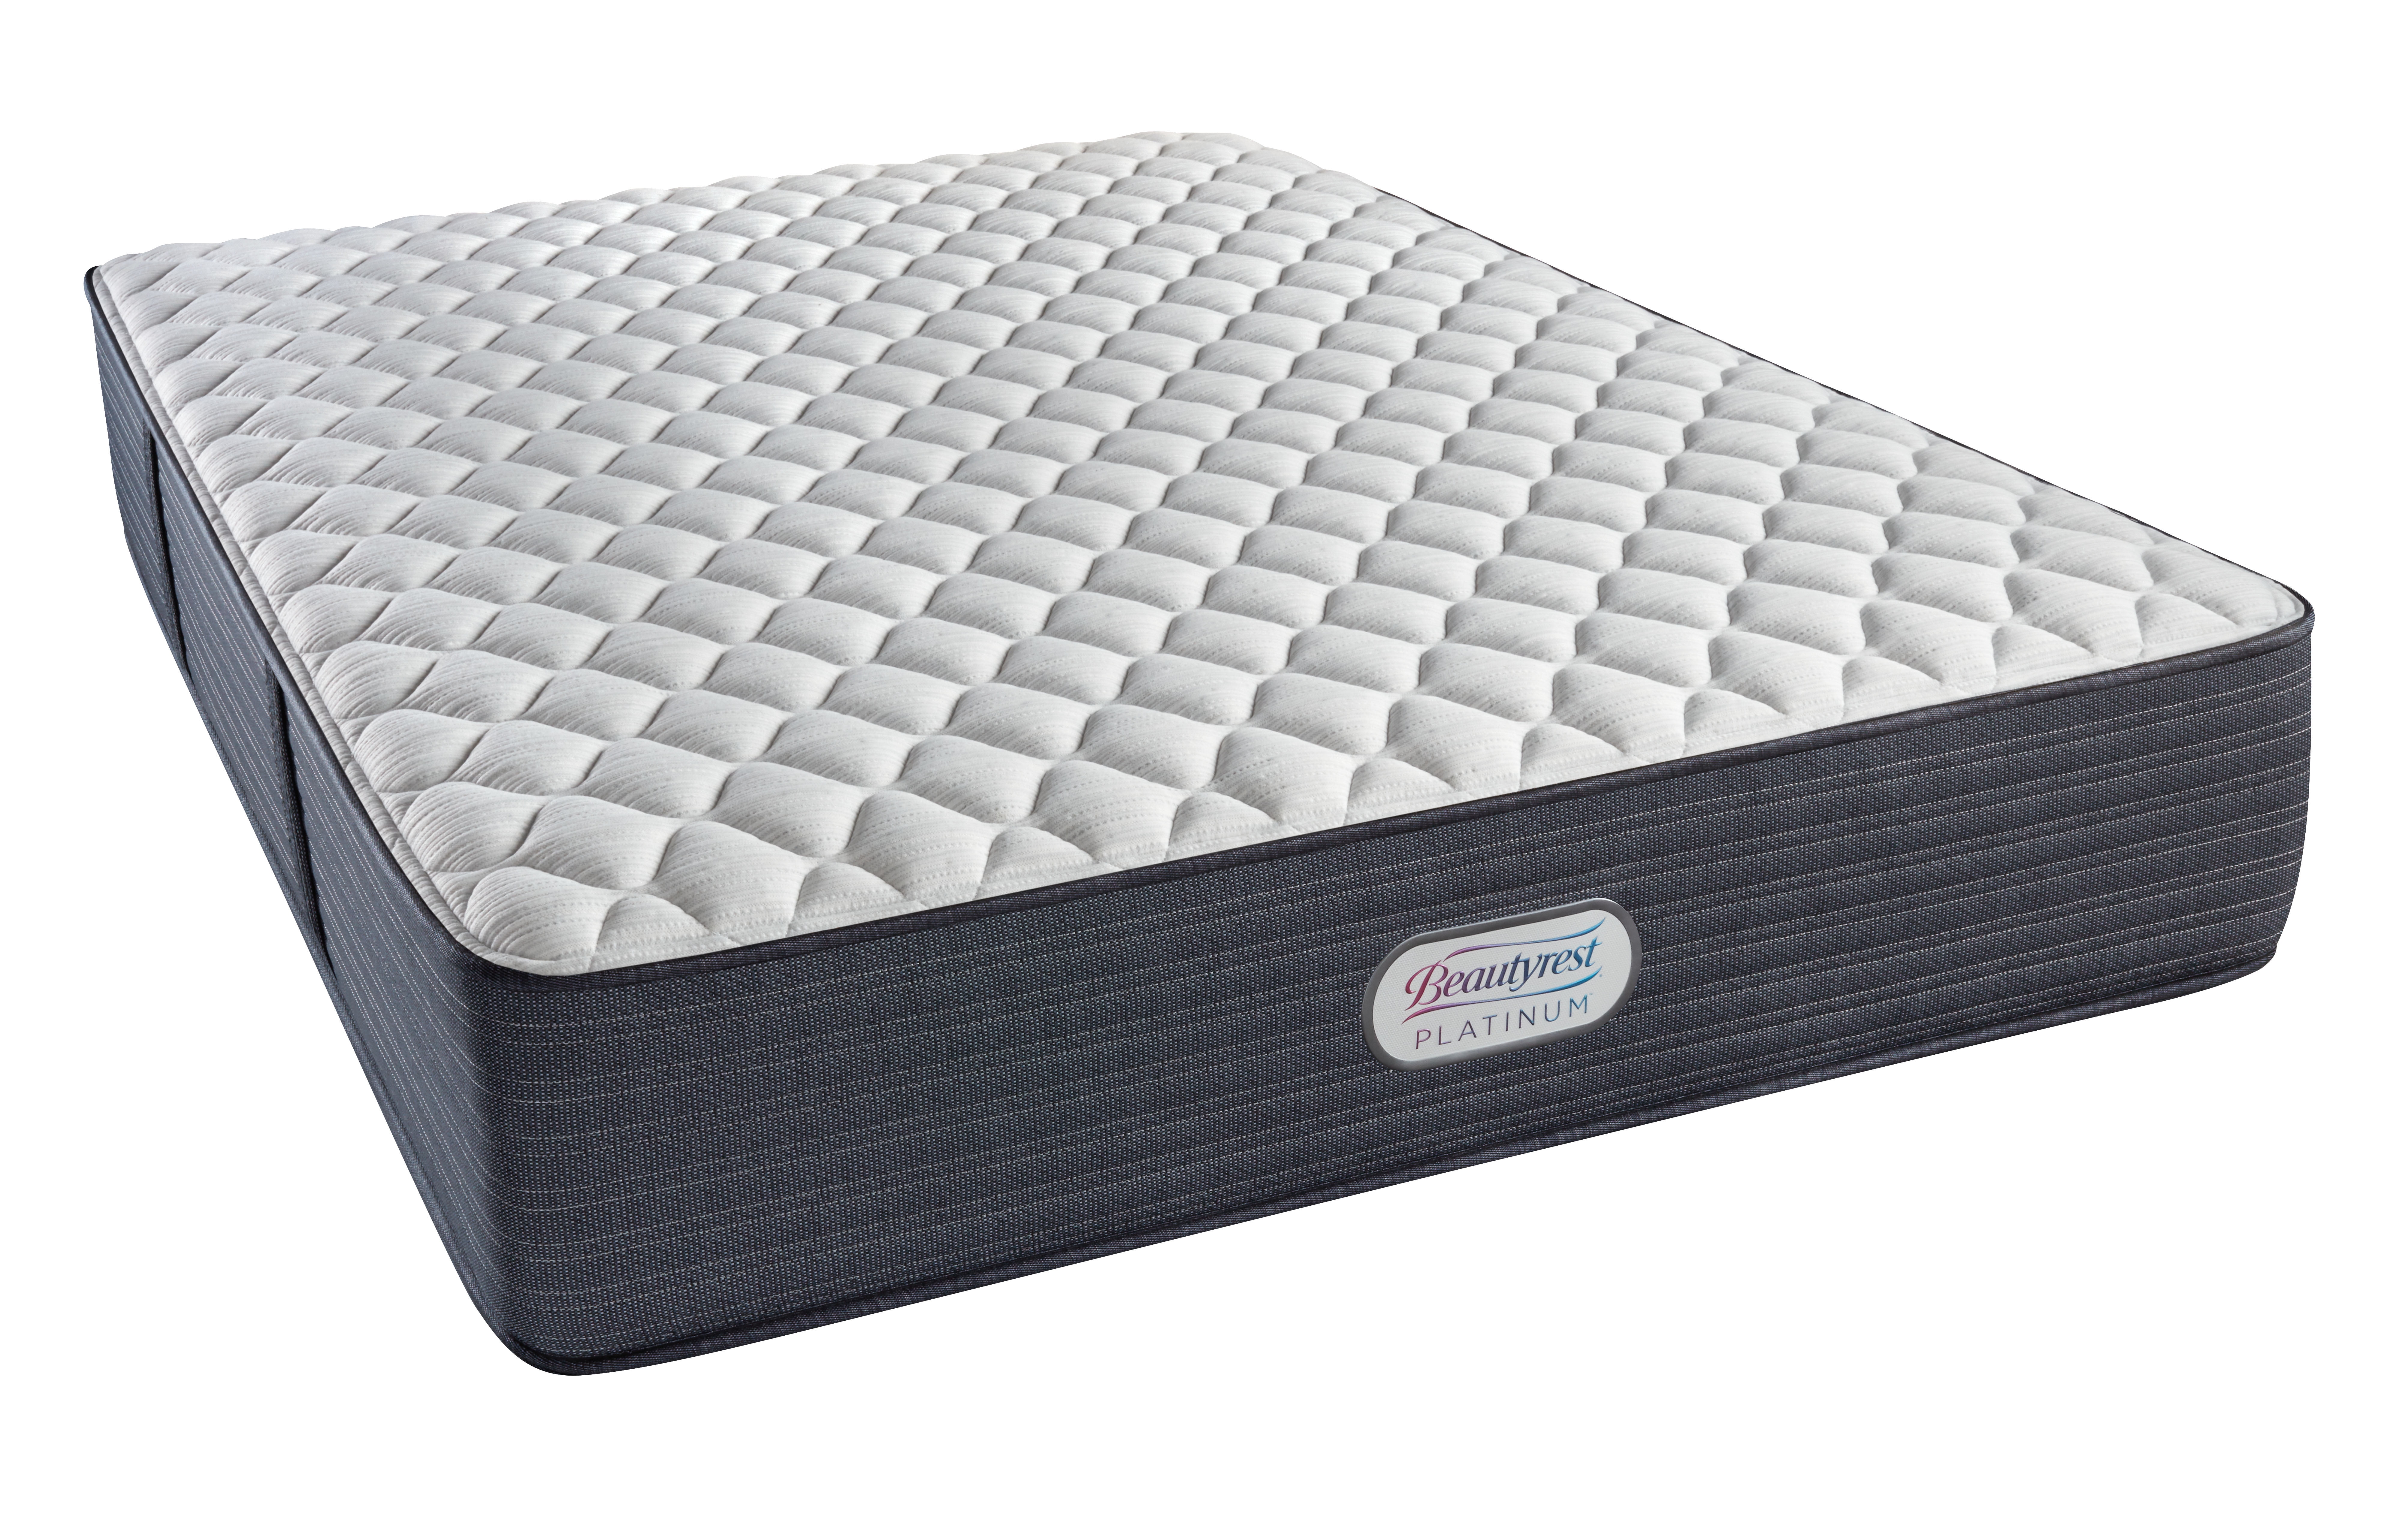 extra firm mattress shoulder pain